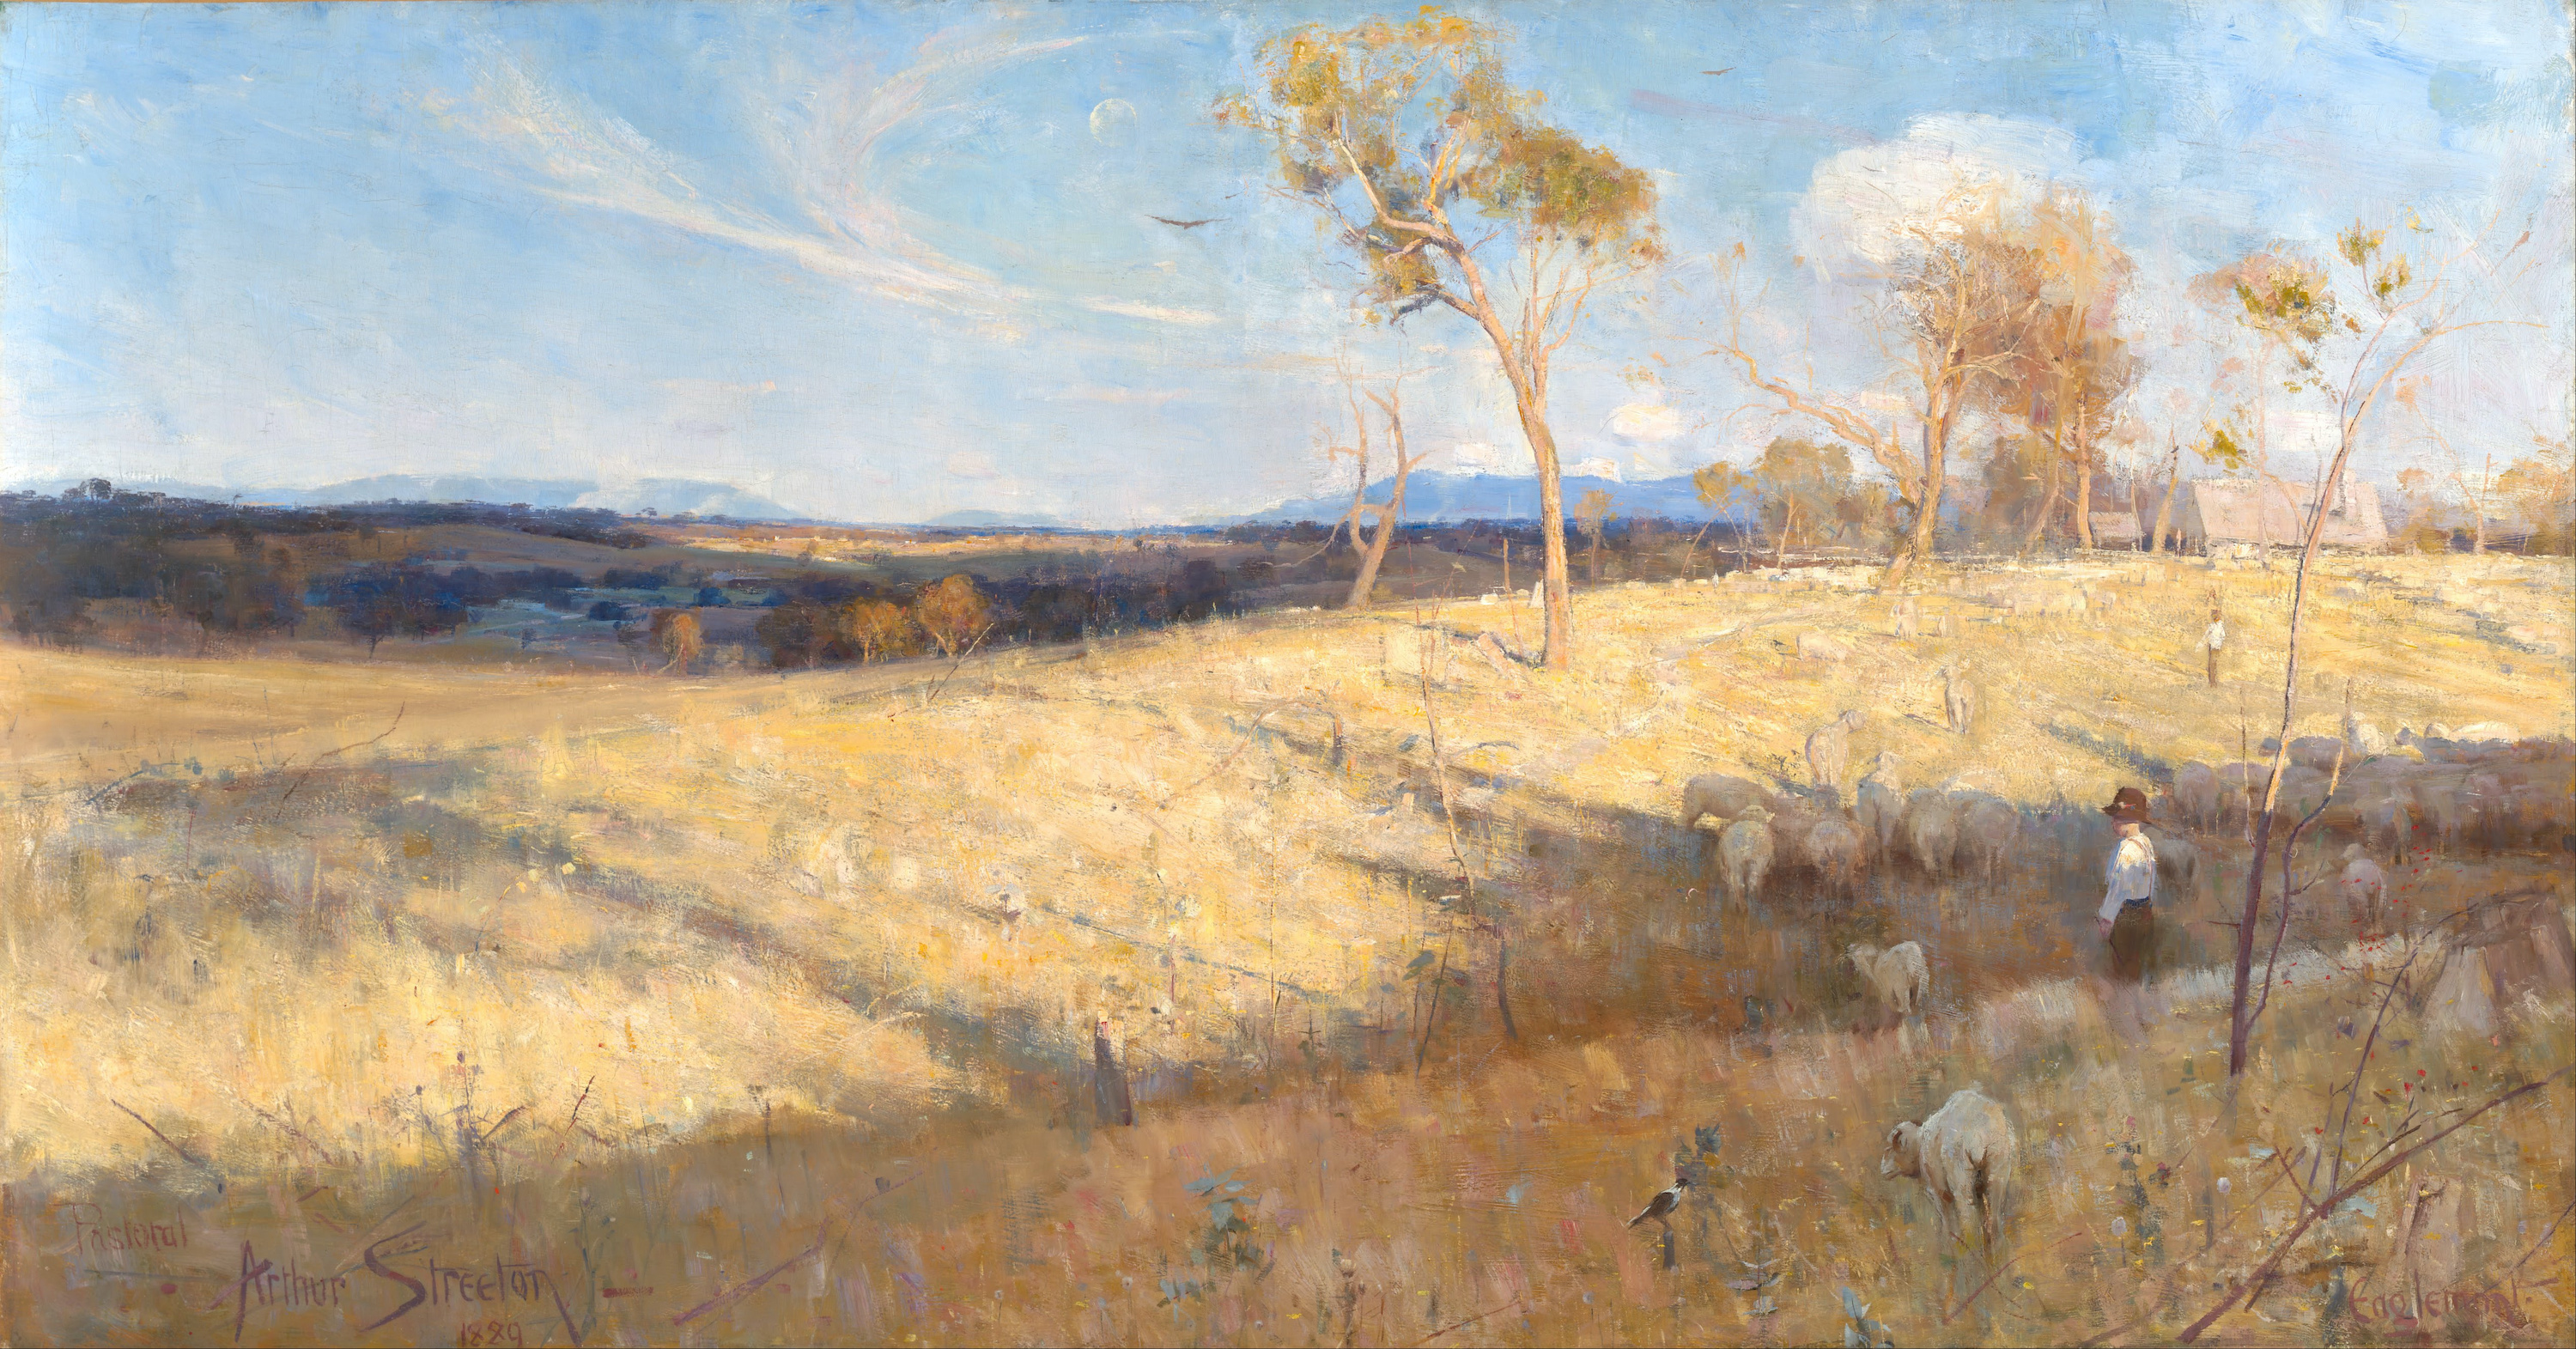 Golden Summer, Eaglemont by Arthur Streeton - 1889 - 81.3 × 152.6 cm National Gallery of Australia